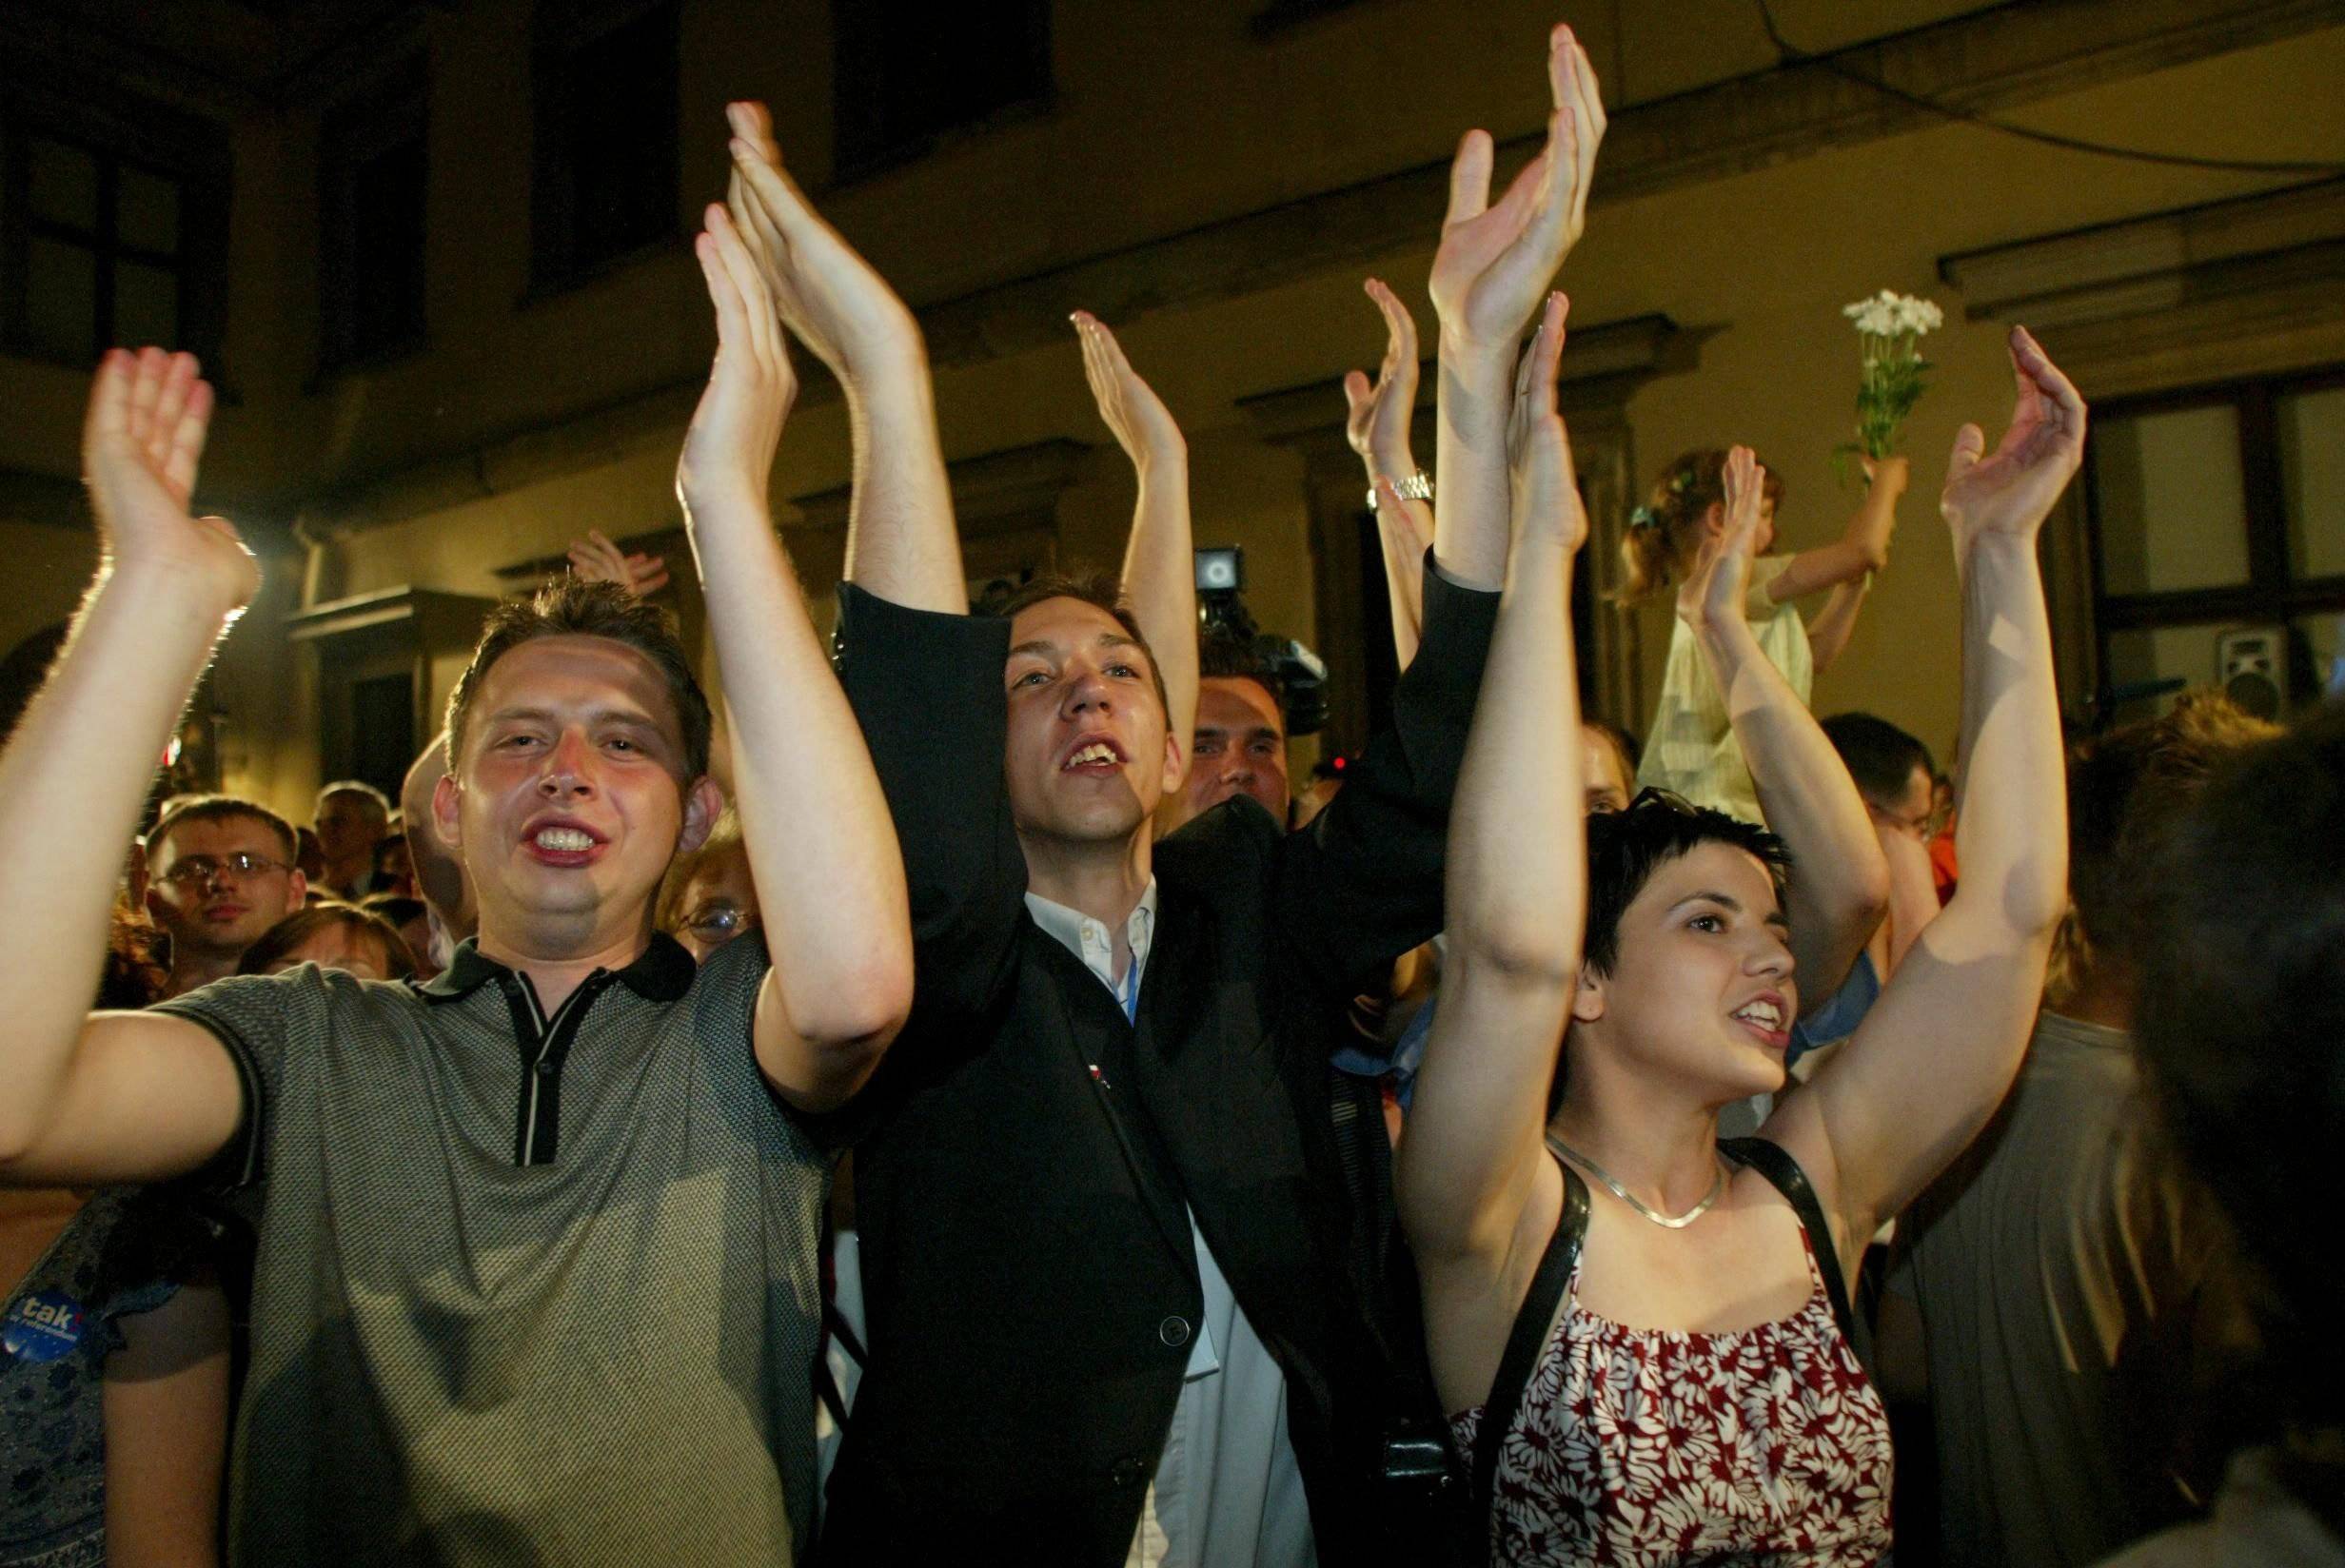 młodzi ludzie z rękami podniesionymi w góre w geście euforii